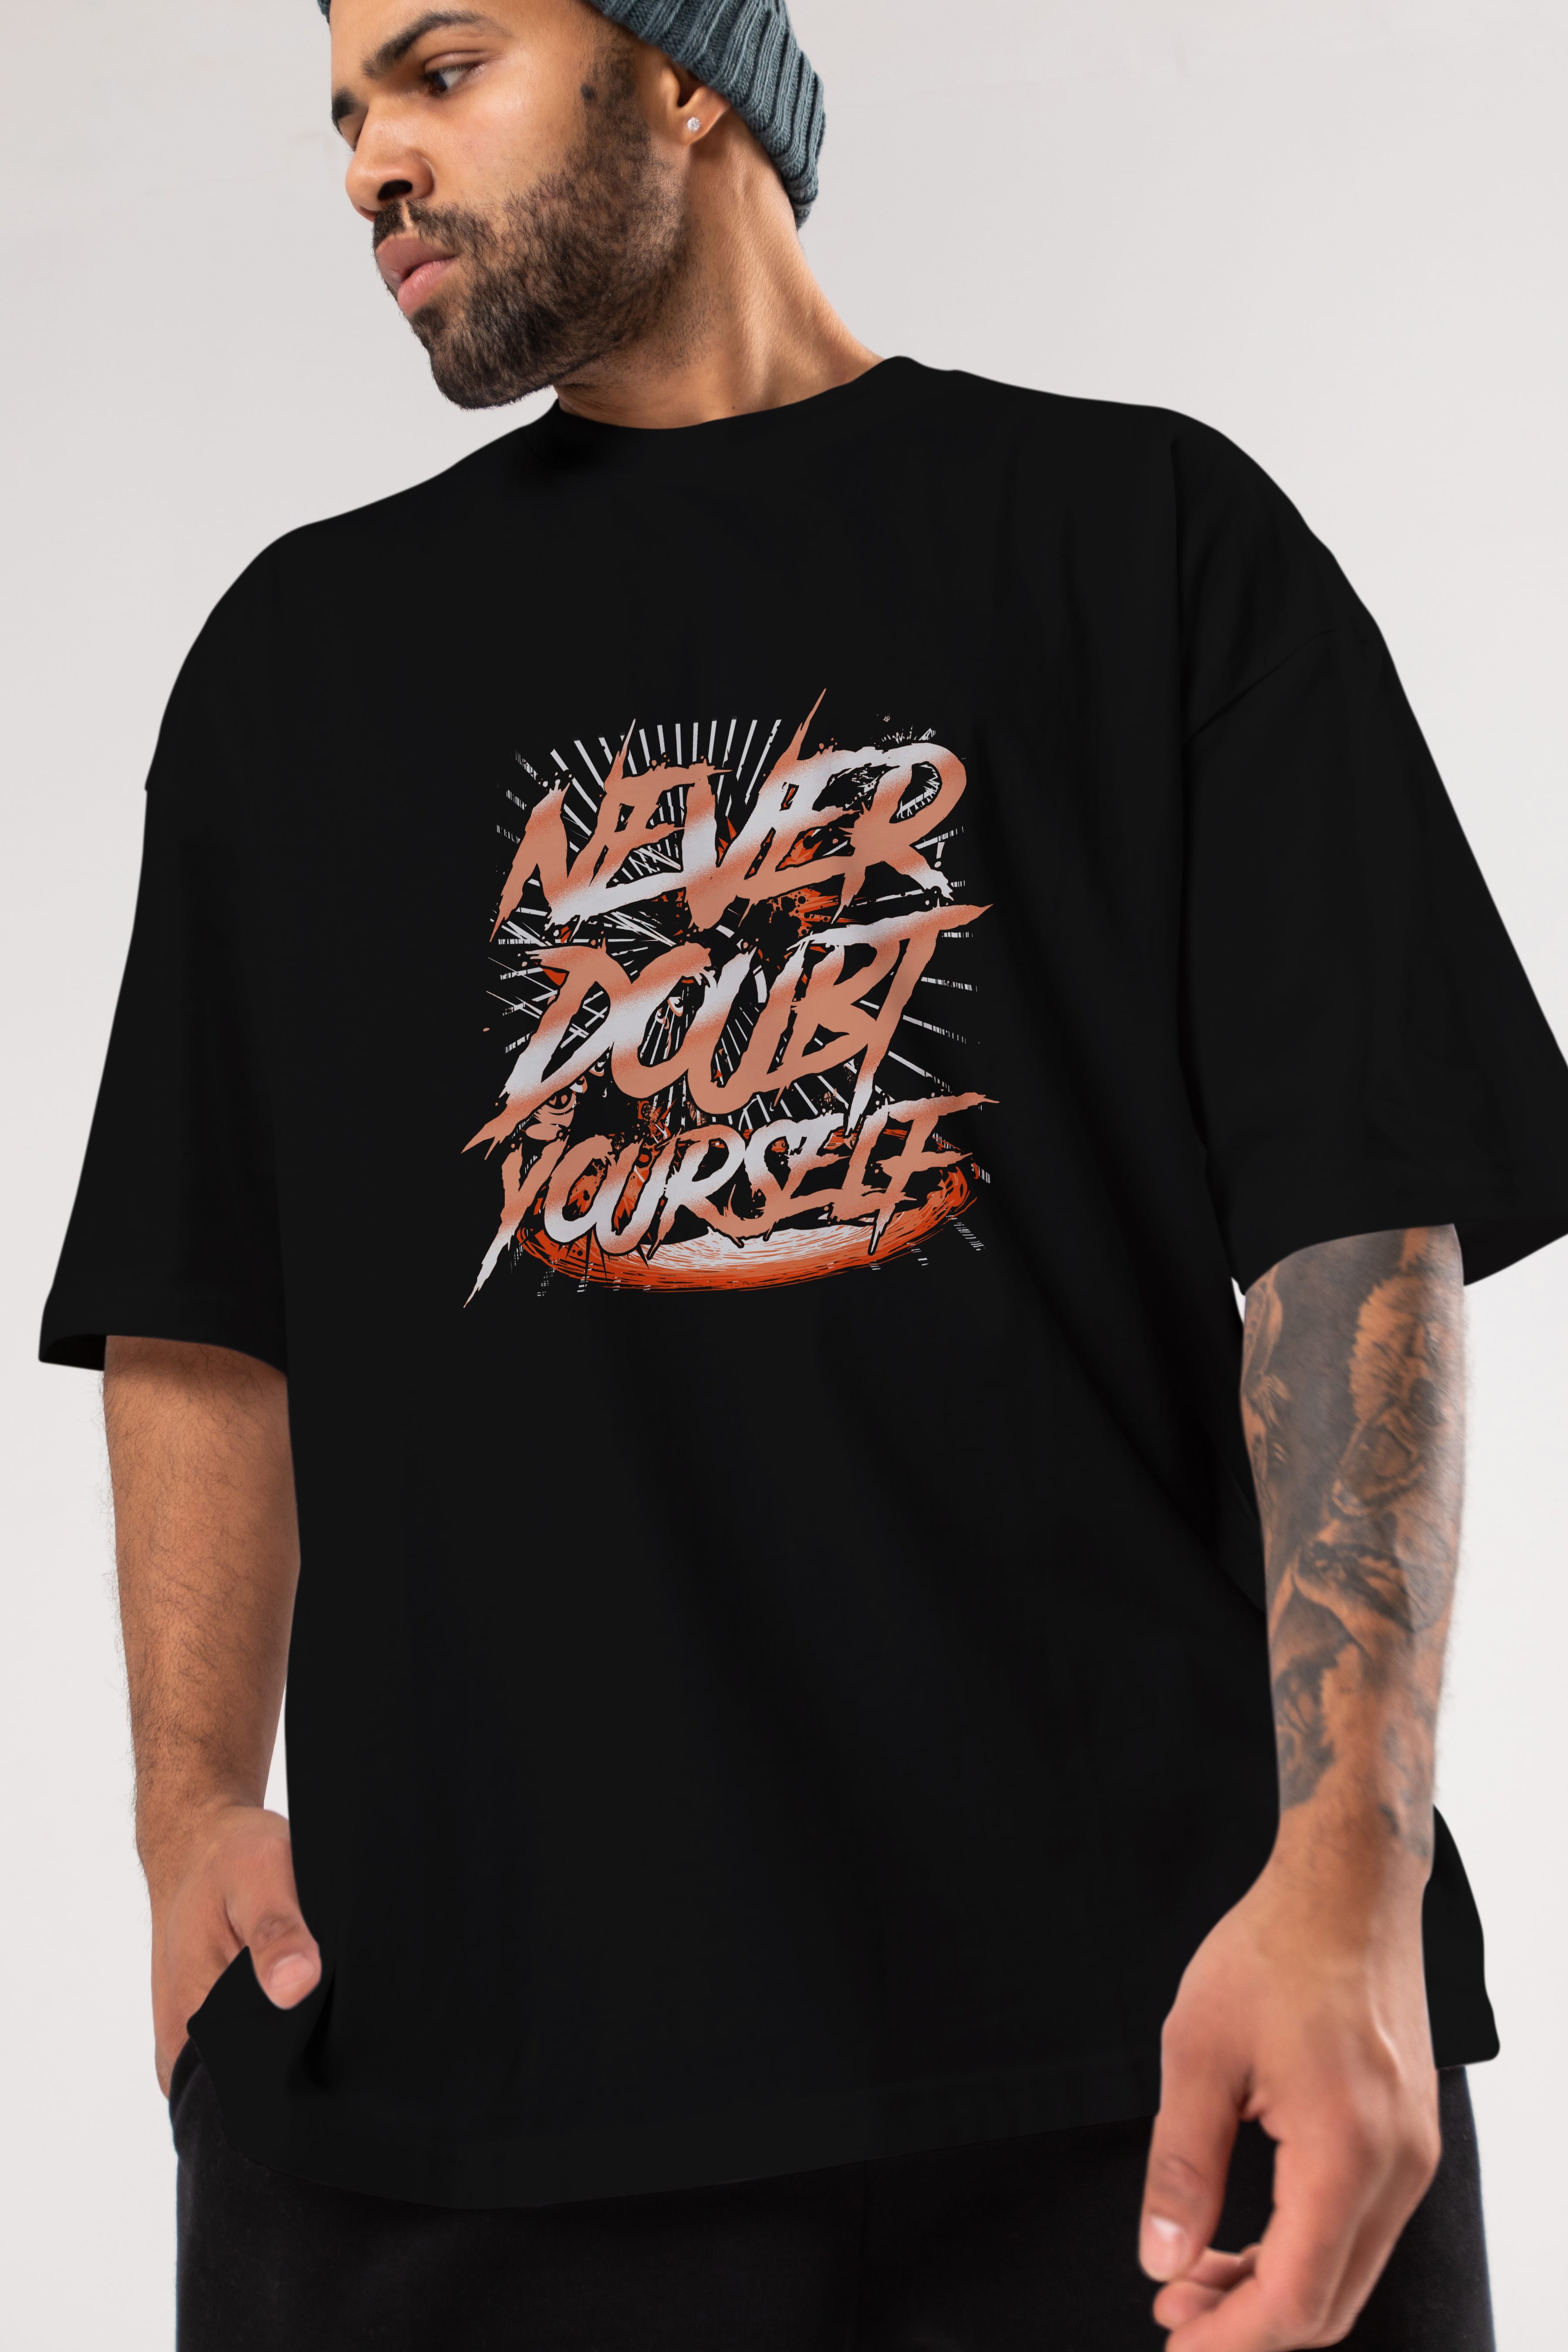 Never Doubt Yourself Ön Baskılı Oversize t-shirt Erkek Kadın Unisex